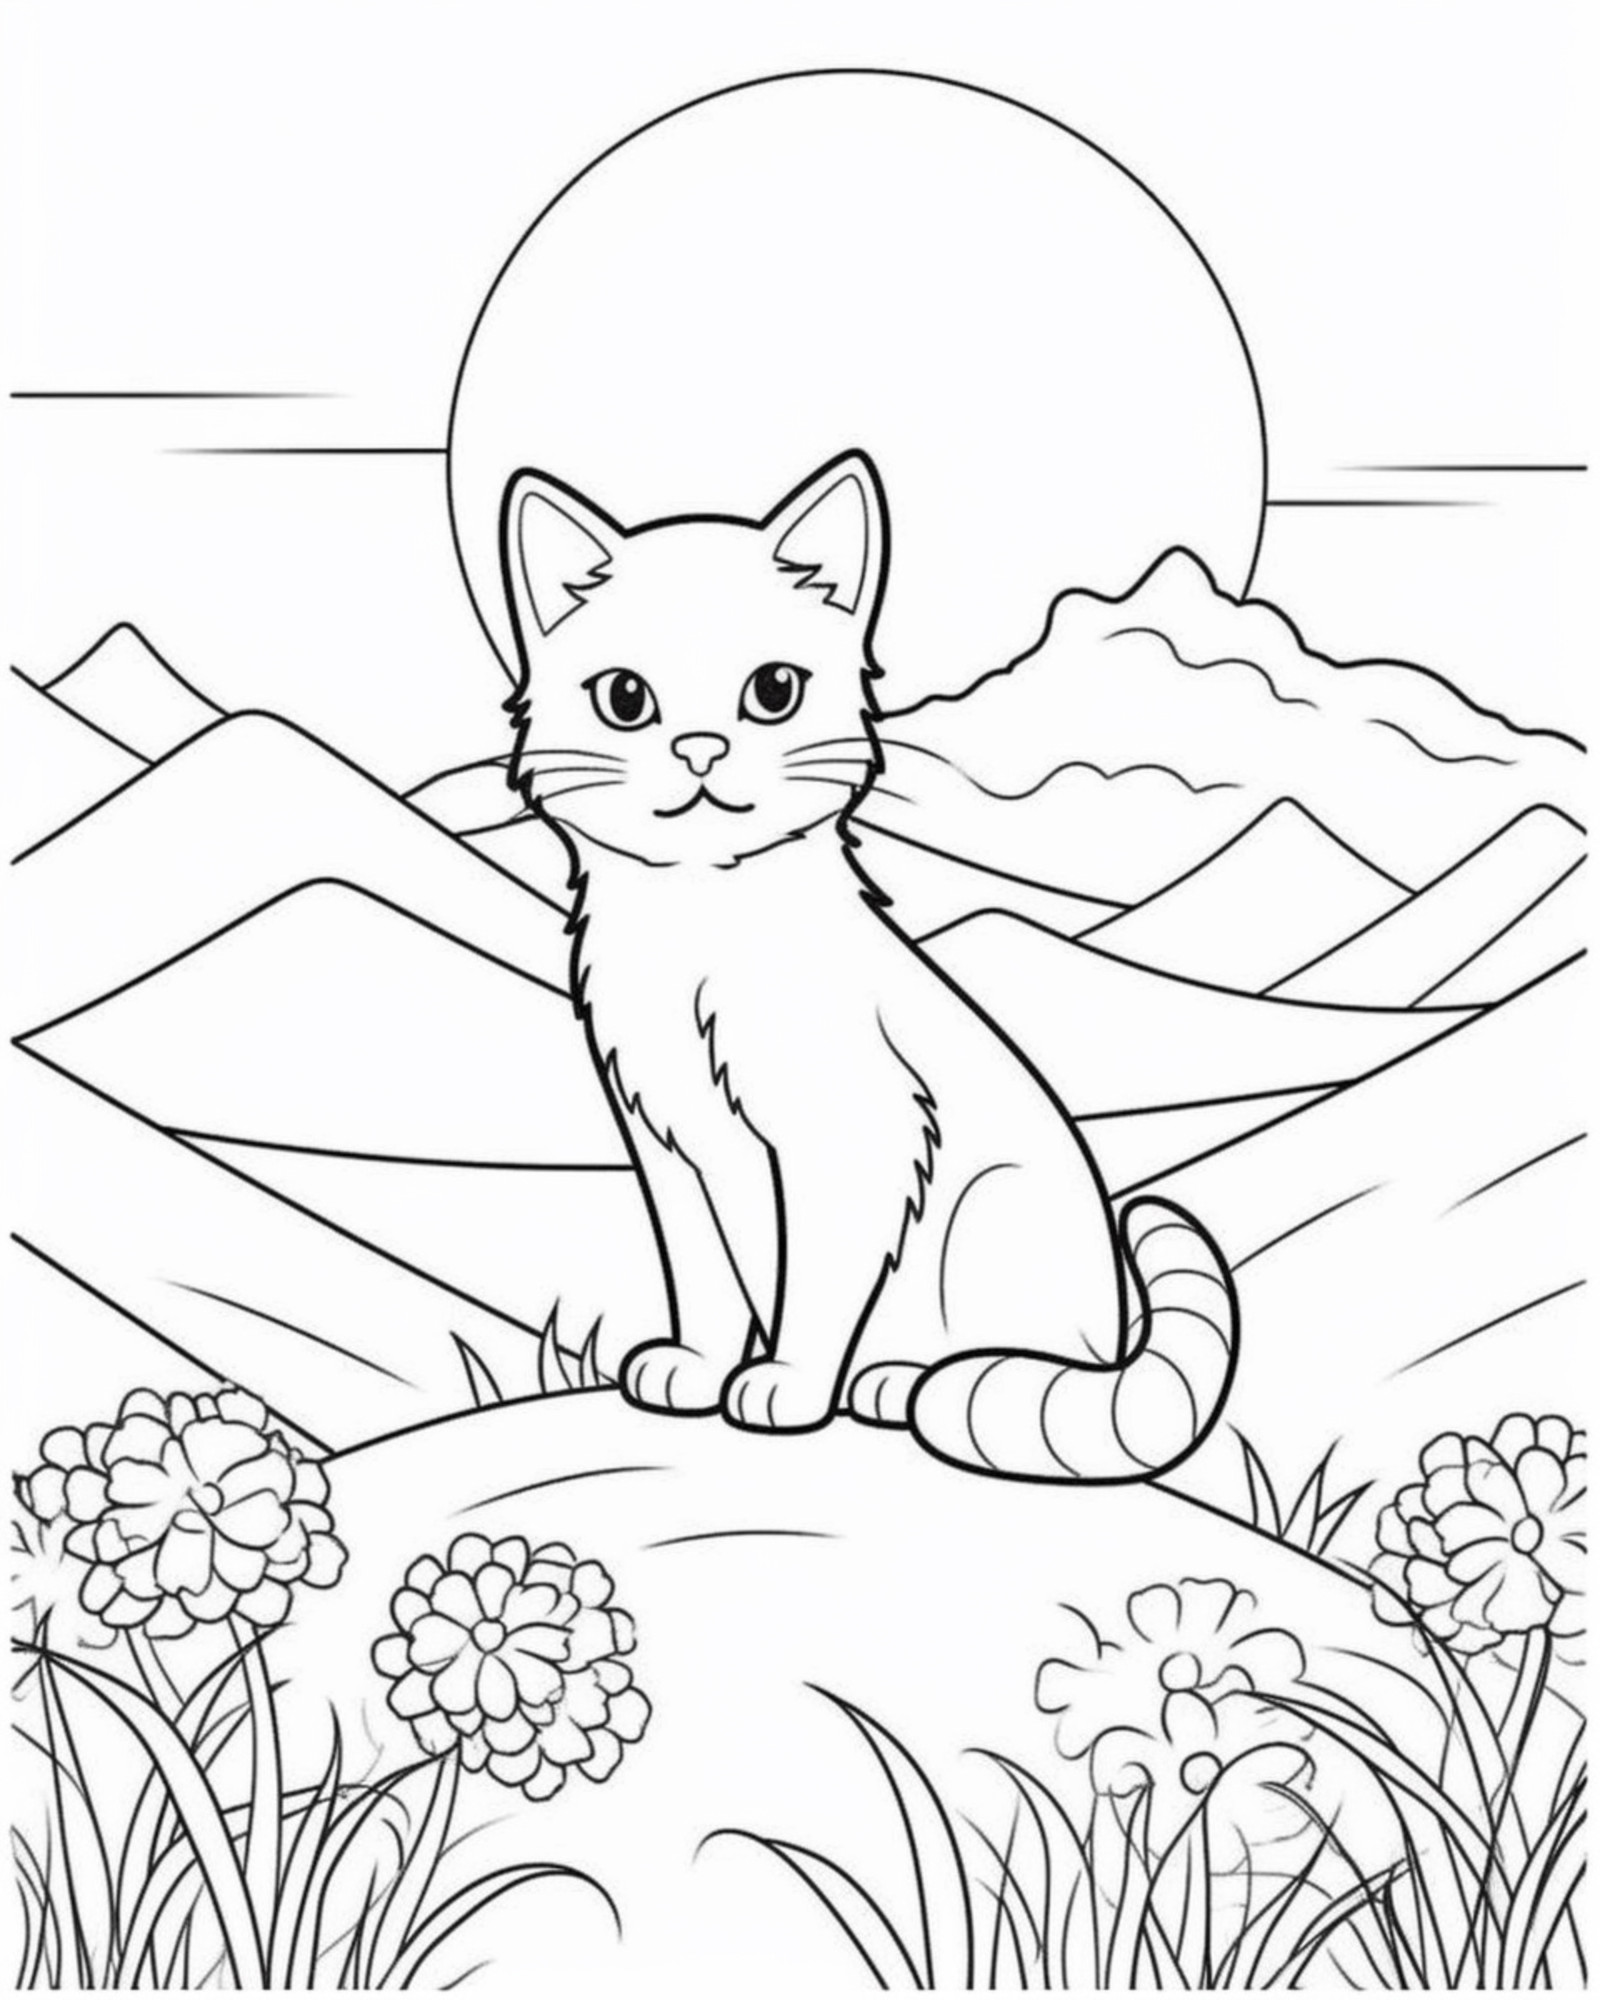 Раскраска для детей: кот на холме с цветами на фоне луны и гор